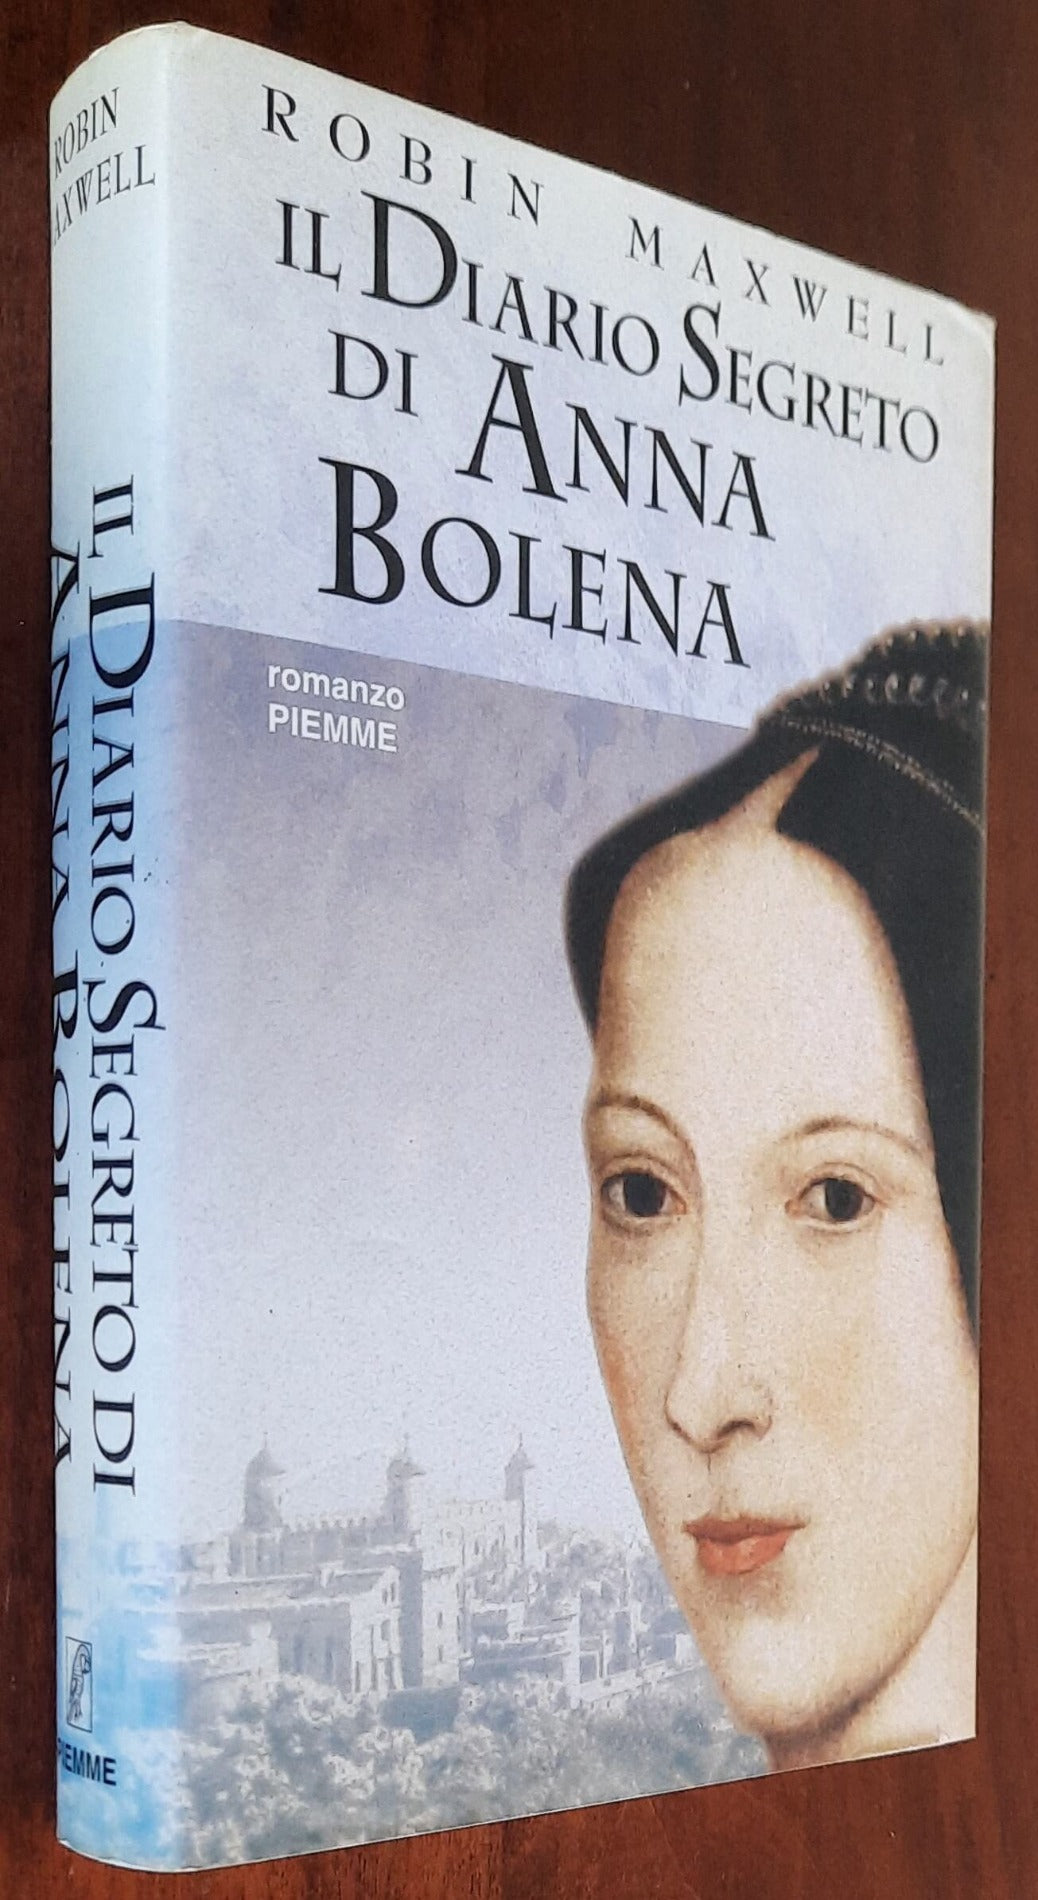 Il diario segreto di Anna Bolena - di Robin Maxwell